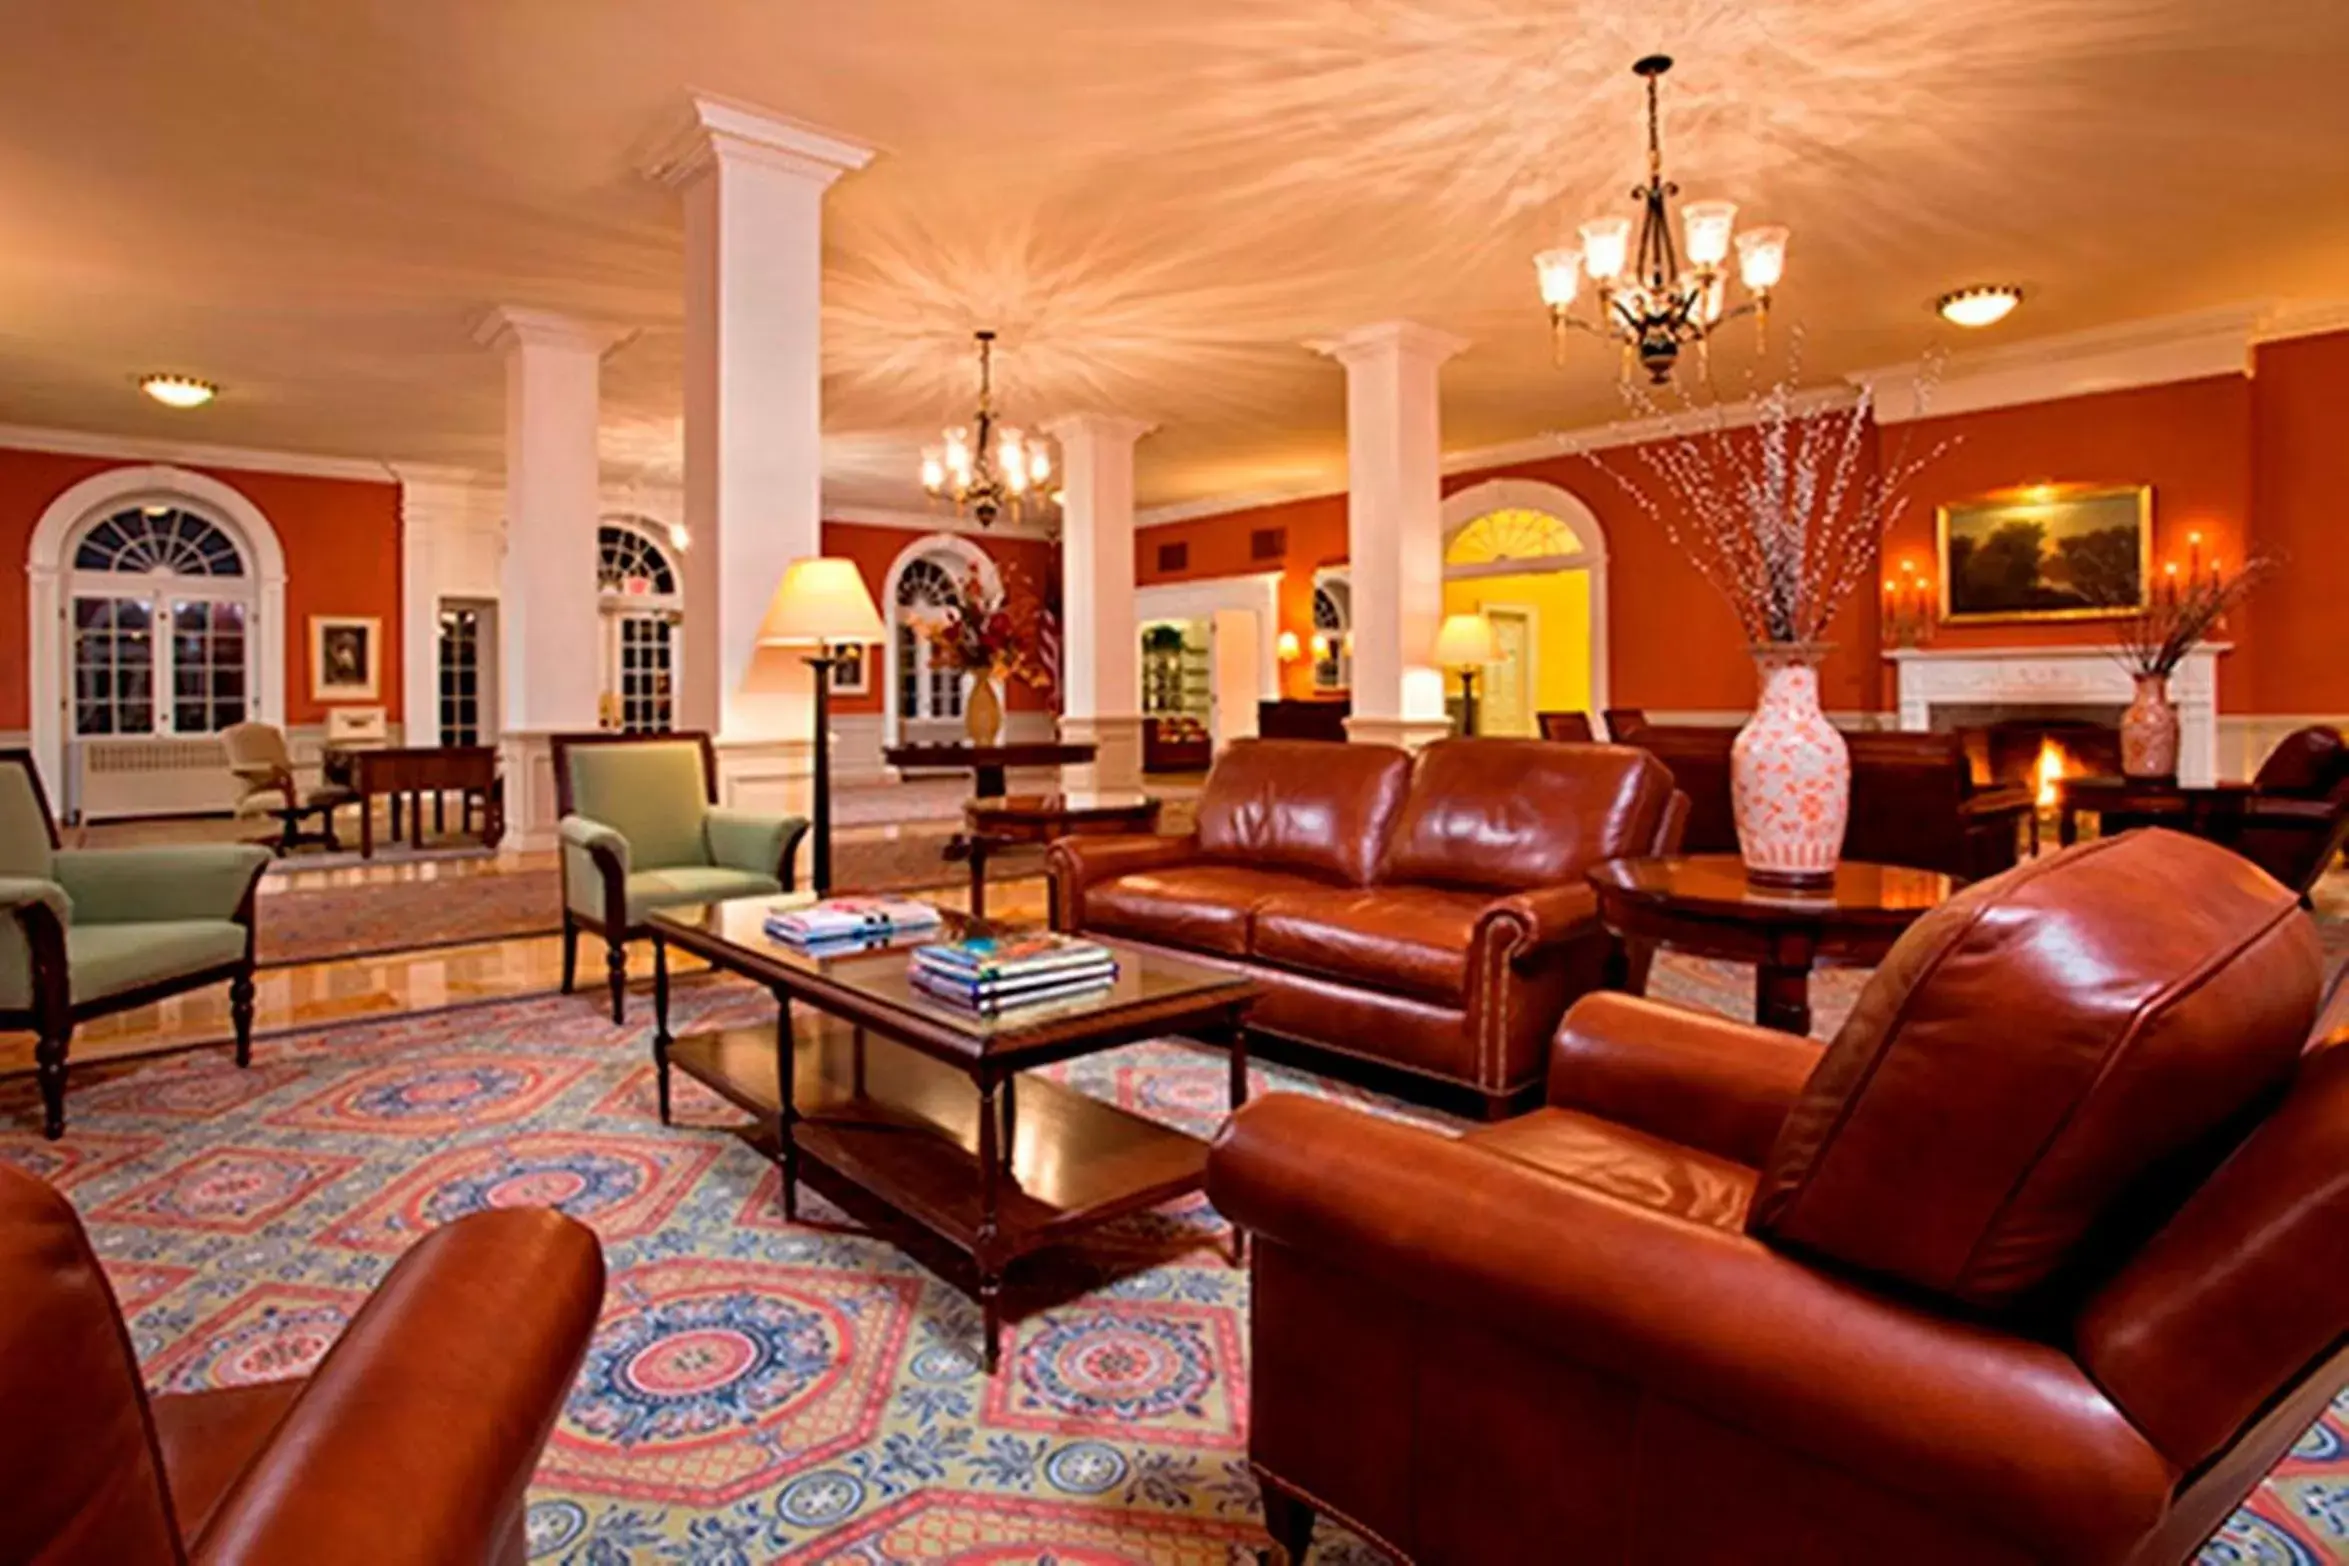 Lobby or reception, Lobby/Reception in Gideon Putnam Resort & Spa